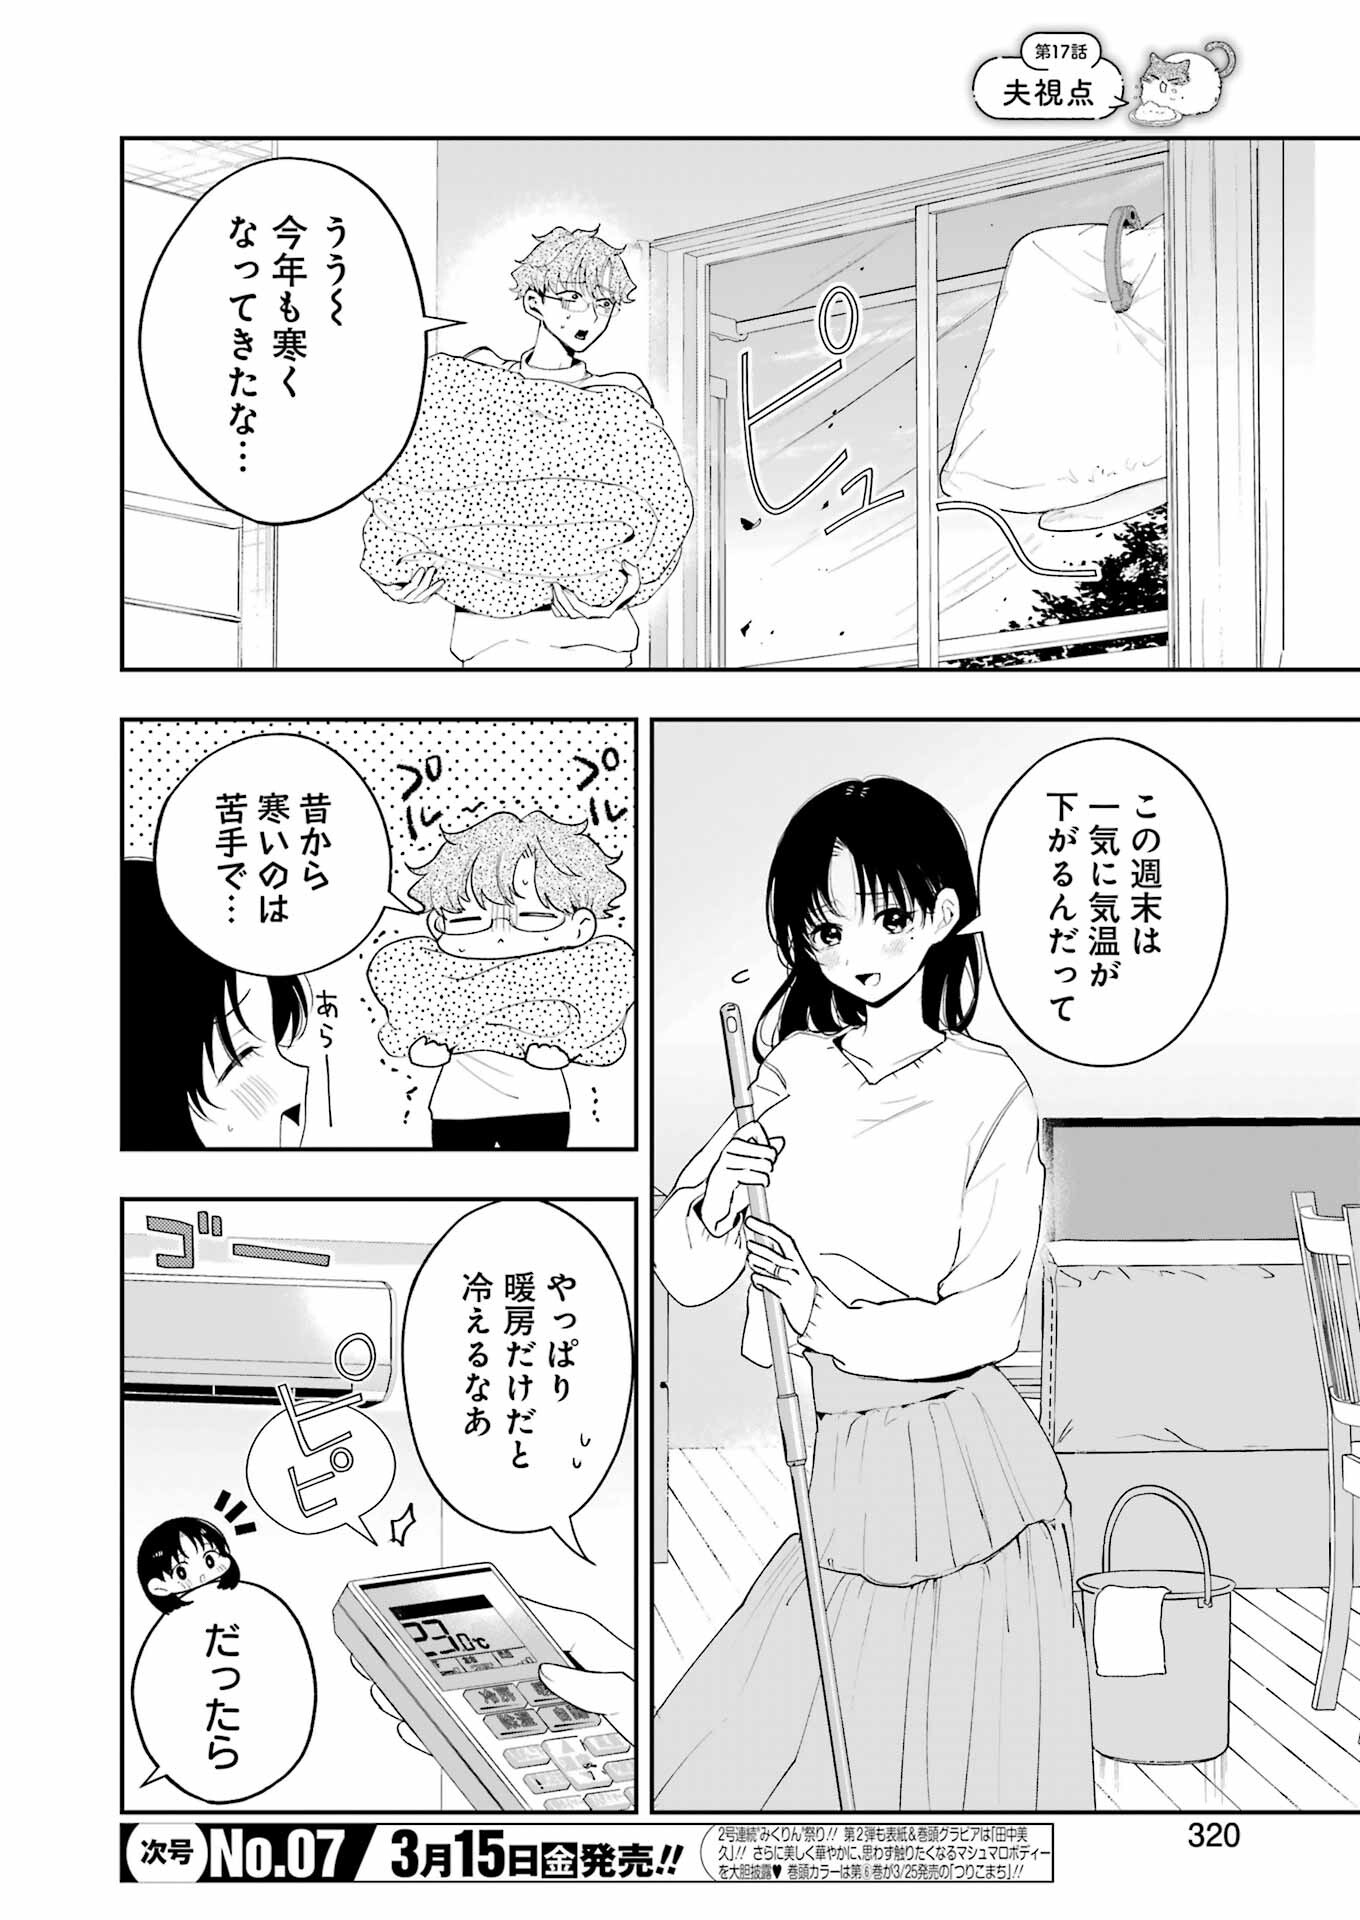 Tsuma wa Boku wo Futorasetai! - Chapter 17 - Page 2